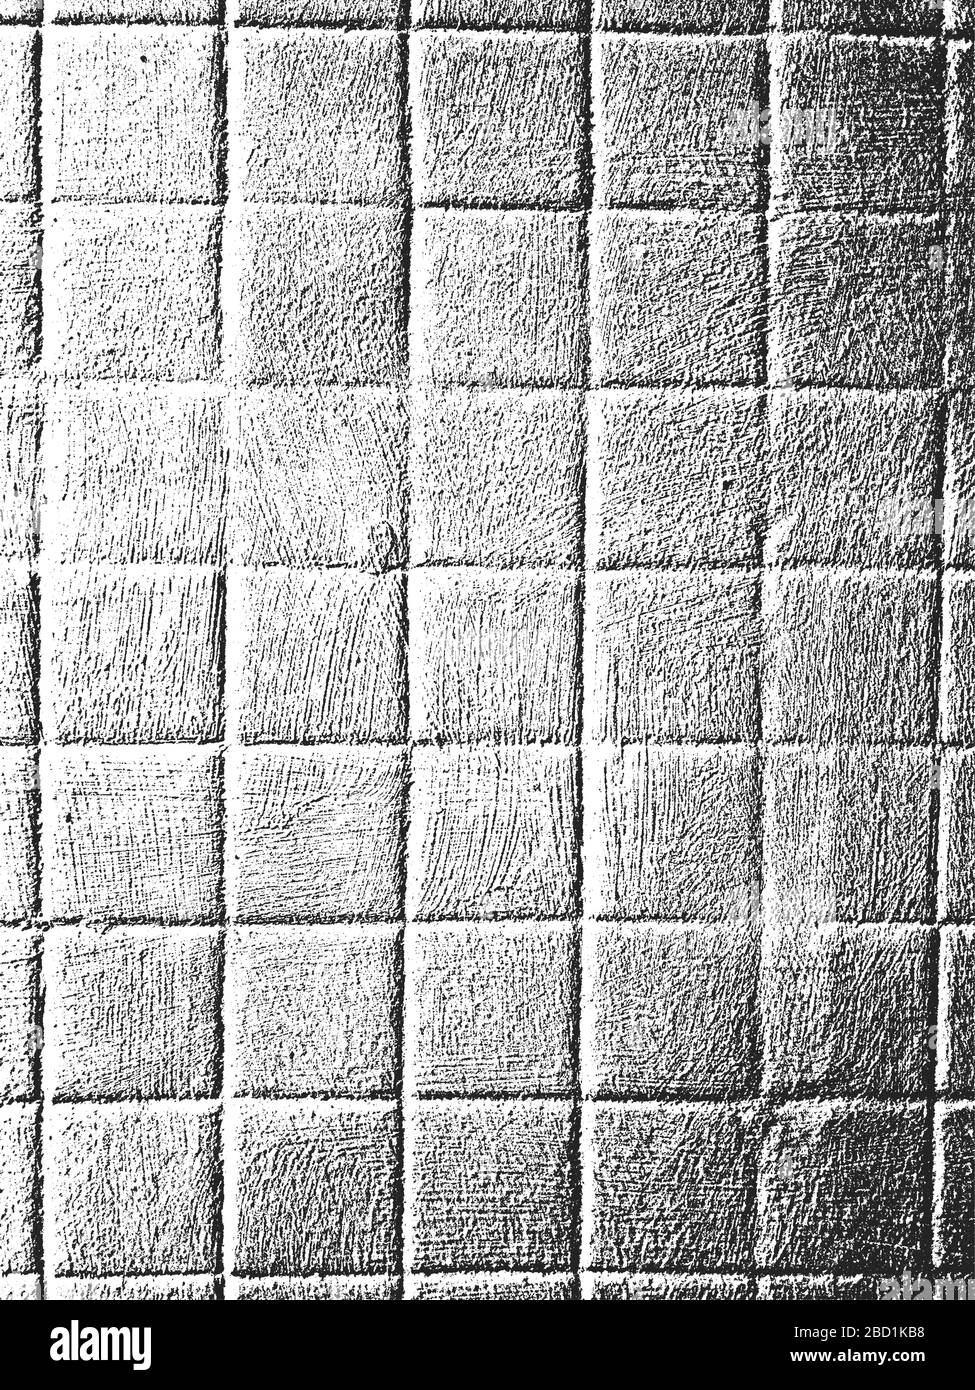 Détresse ancienne texture avec mosaïque de rectangle de sol ou de mur. Fond gris noir et blanc. Illustration vectorielle EPS8. Illustration de Vecteur